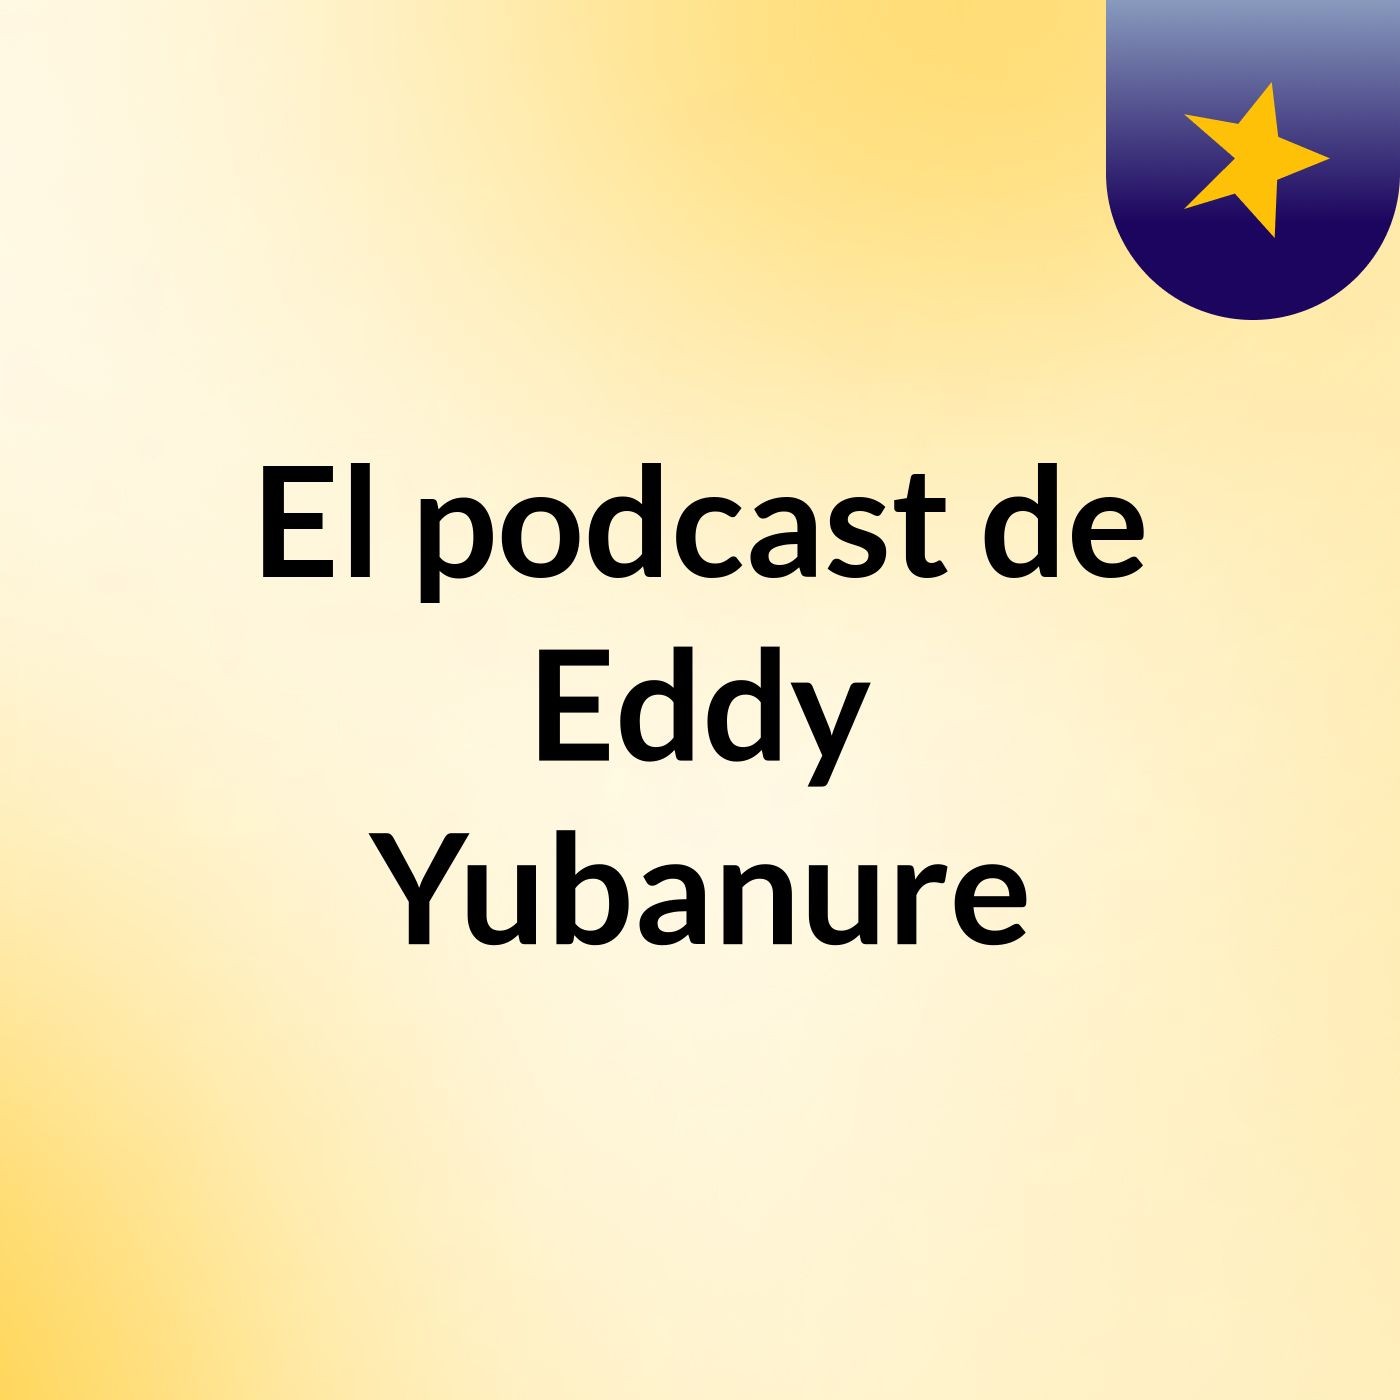 El podcast de Eddy Yubanure